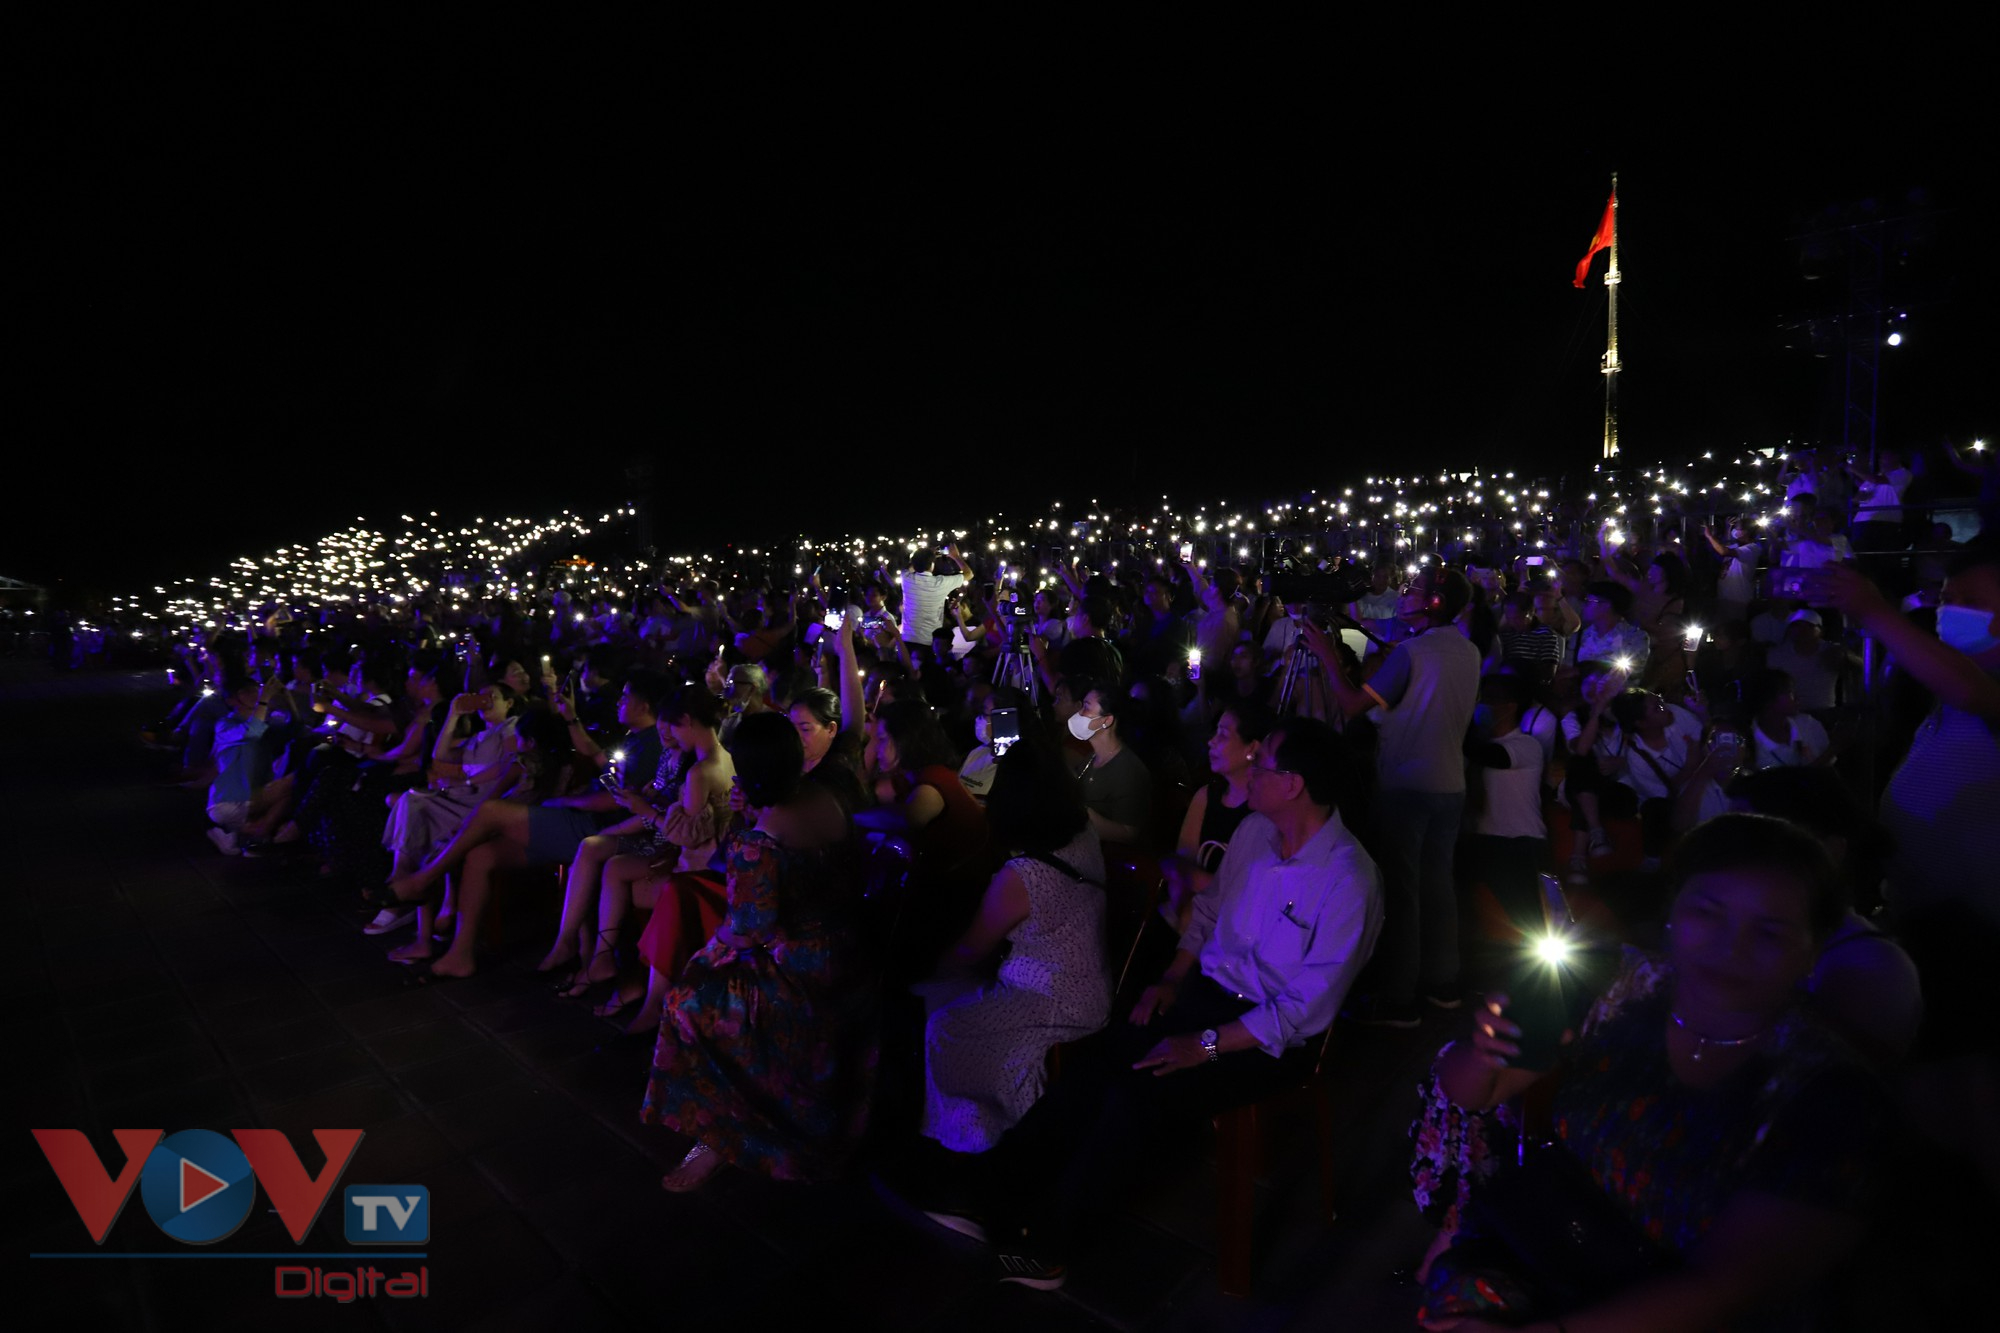 Tuần lễ Festival Huế 2022: Đêm nhạc Trịnh Công Sơn 'Huế - Sài Gòn - Hà Nội' - Ảnh 7.